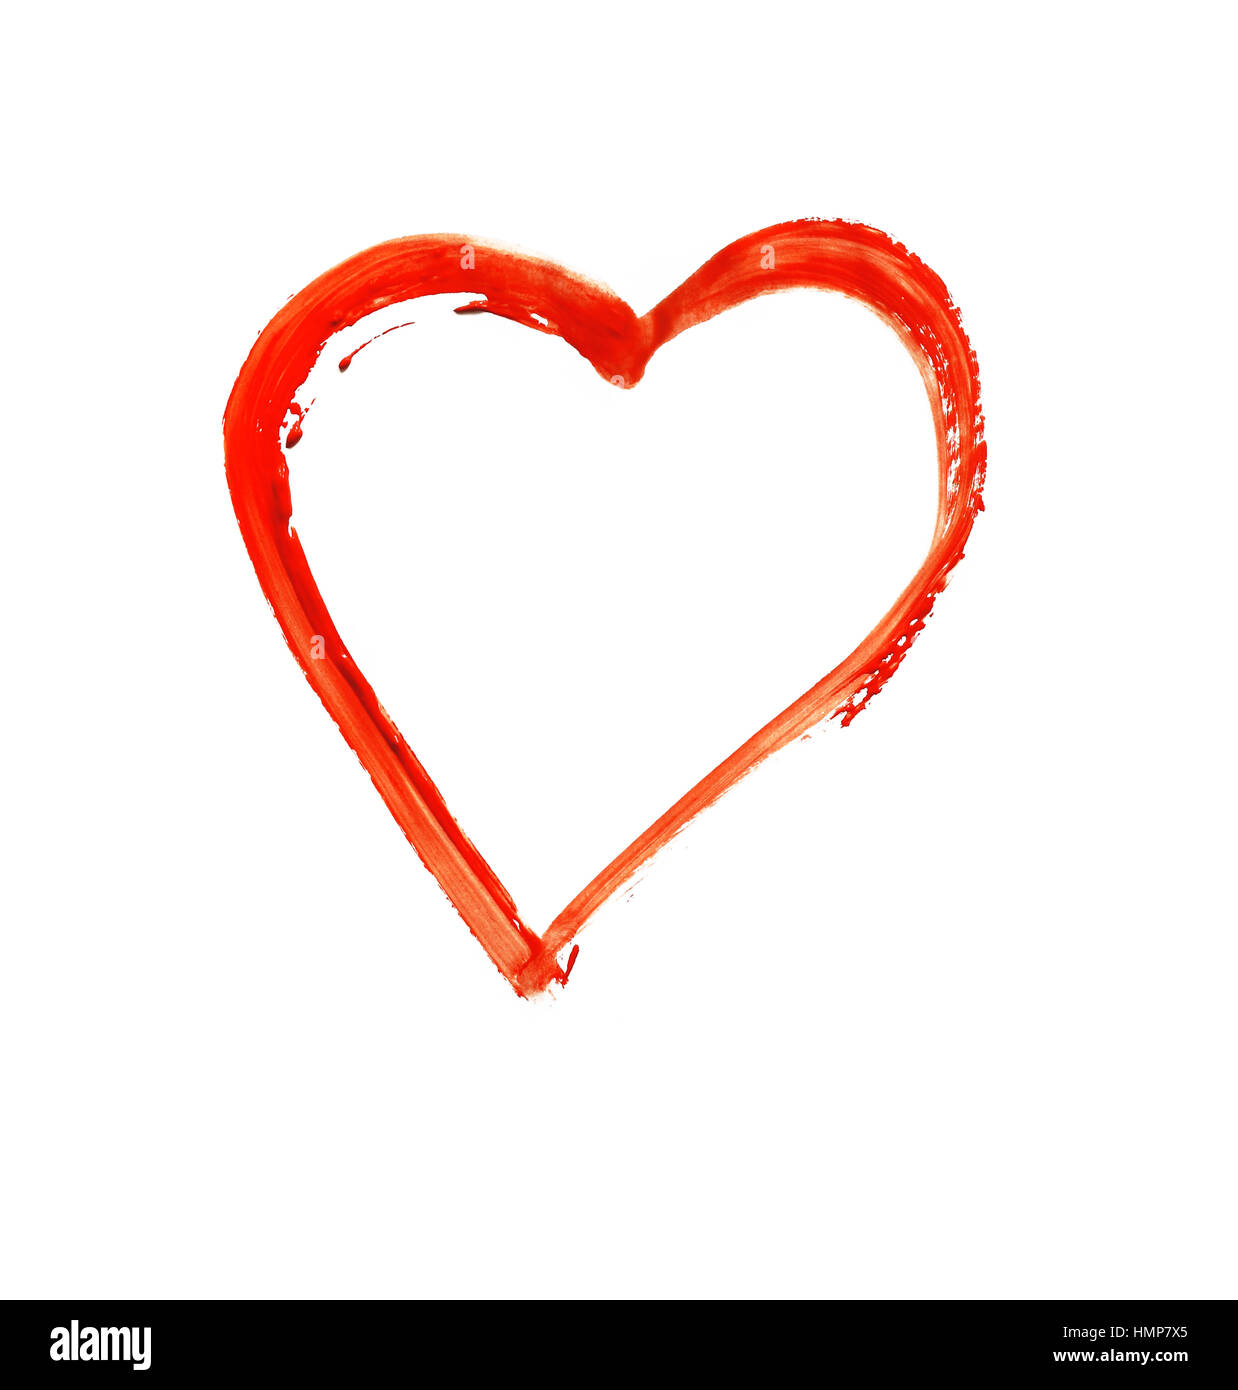 Coeur peint - symbole de l'amour - aquarelle sur papier Banque D'Images